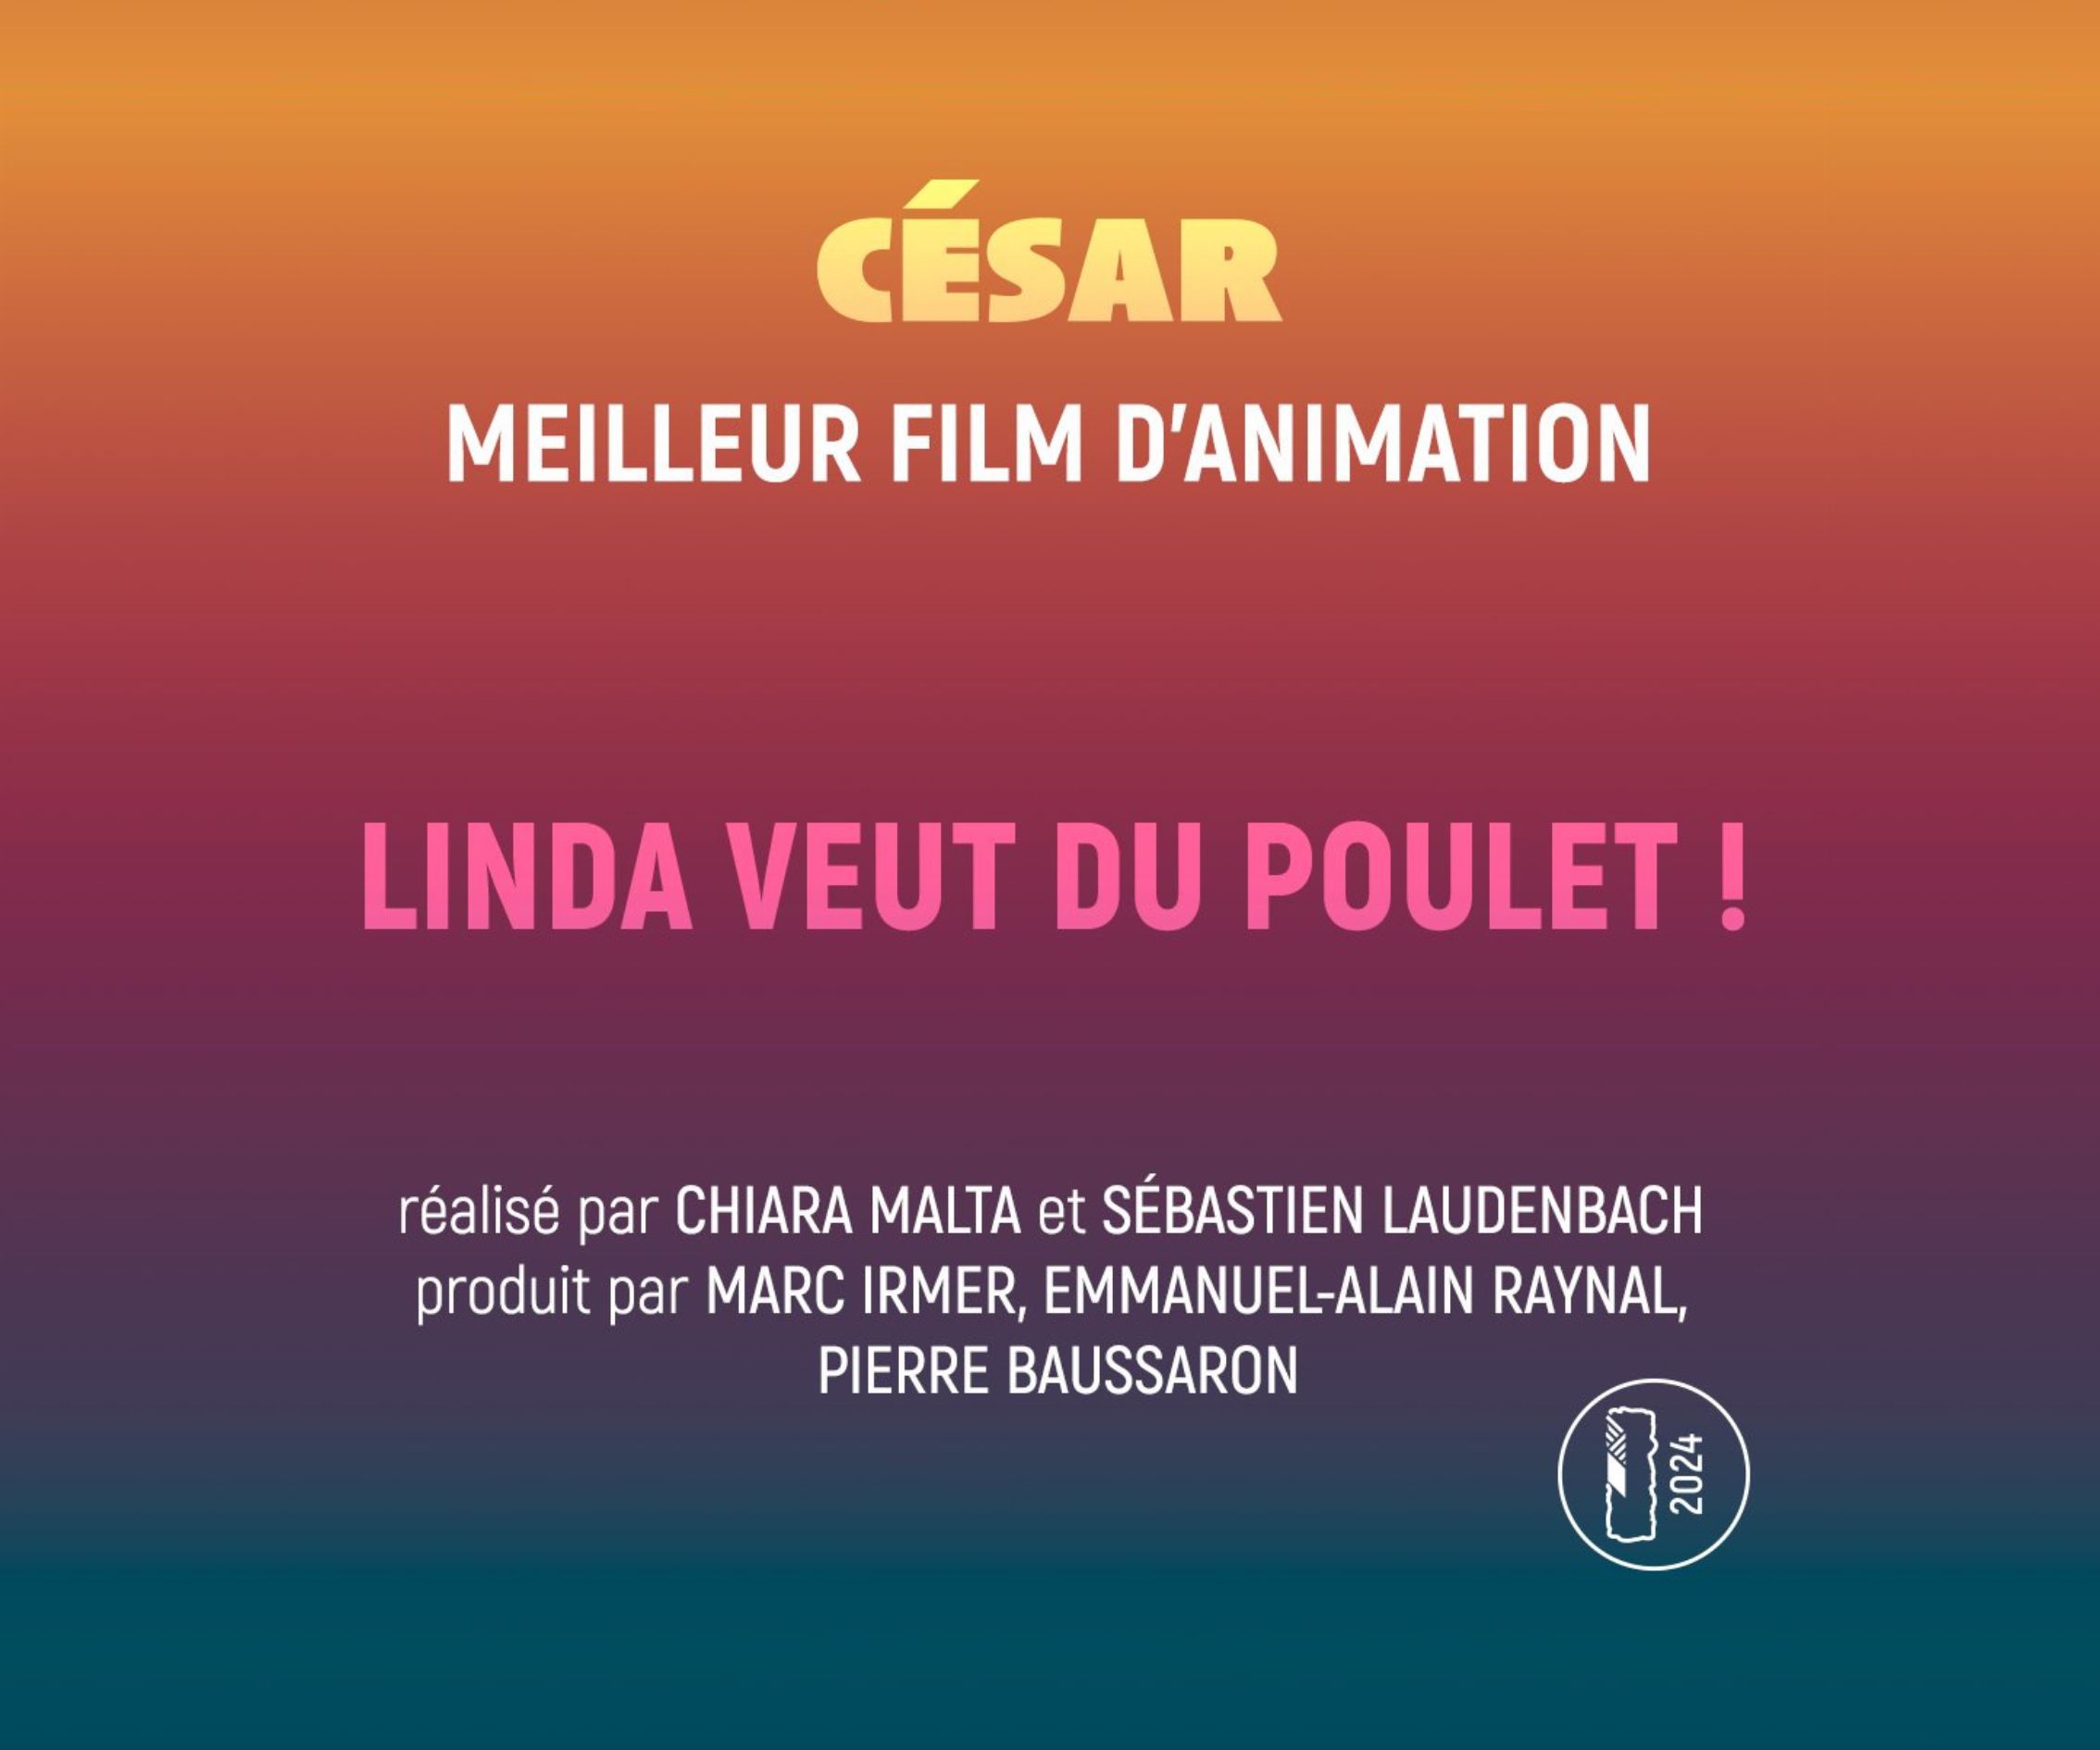 « Linda veut du poulet ! » reçoit le César du meilleur film d’animation